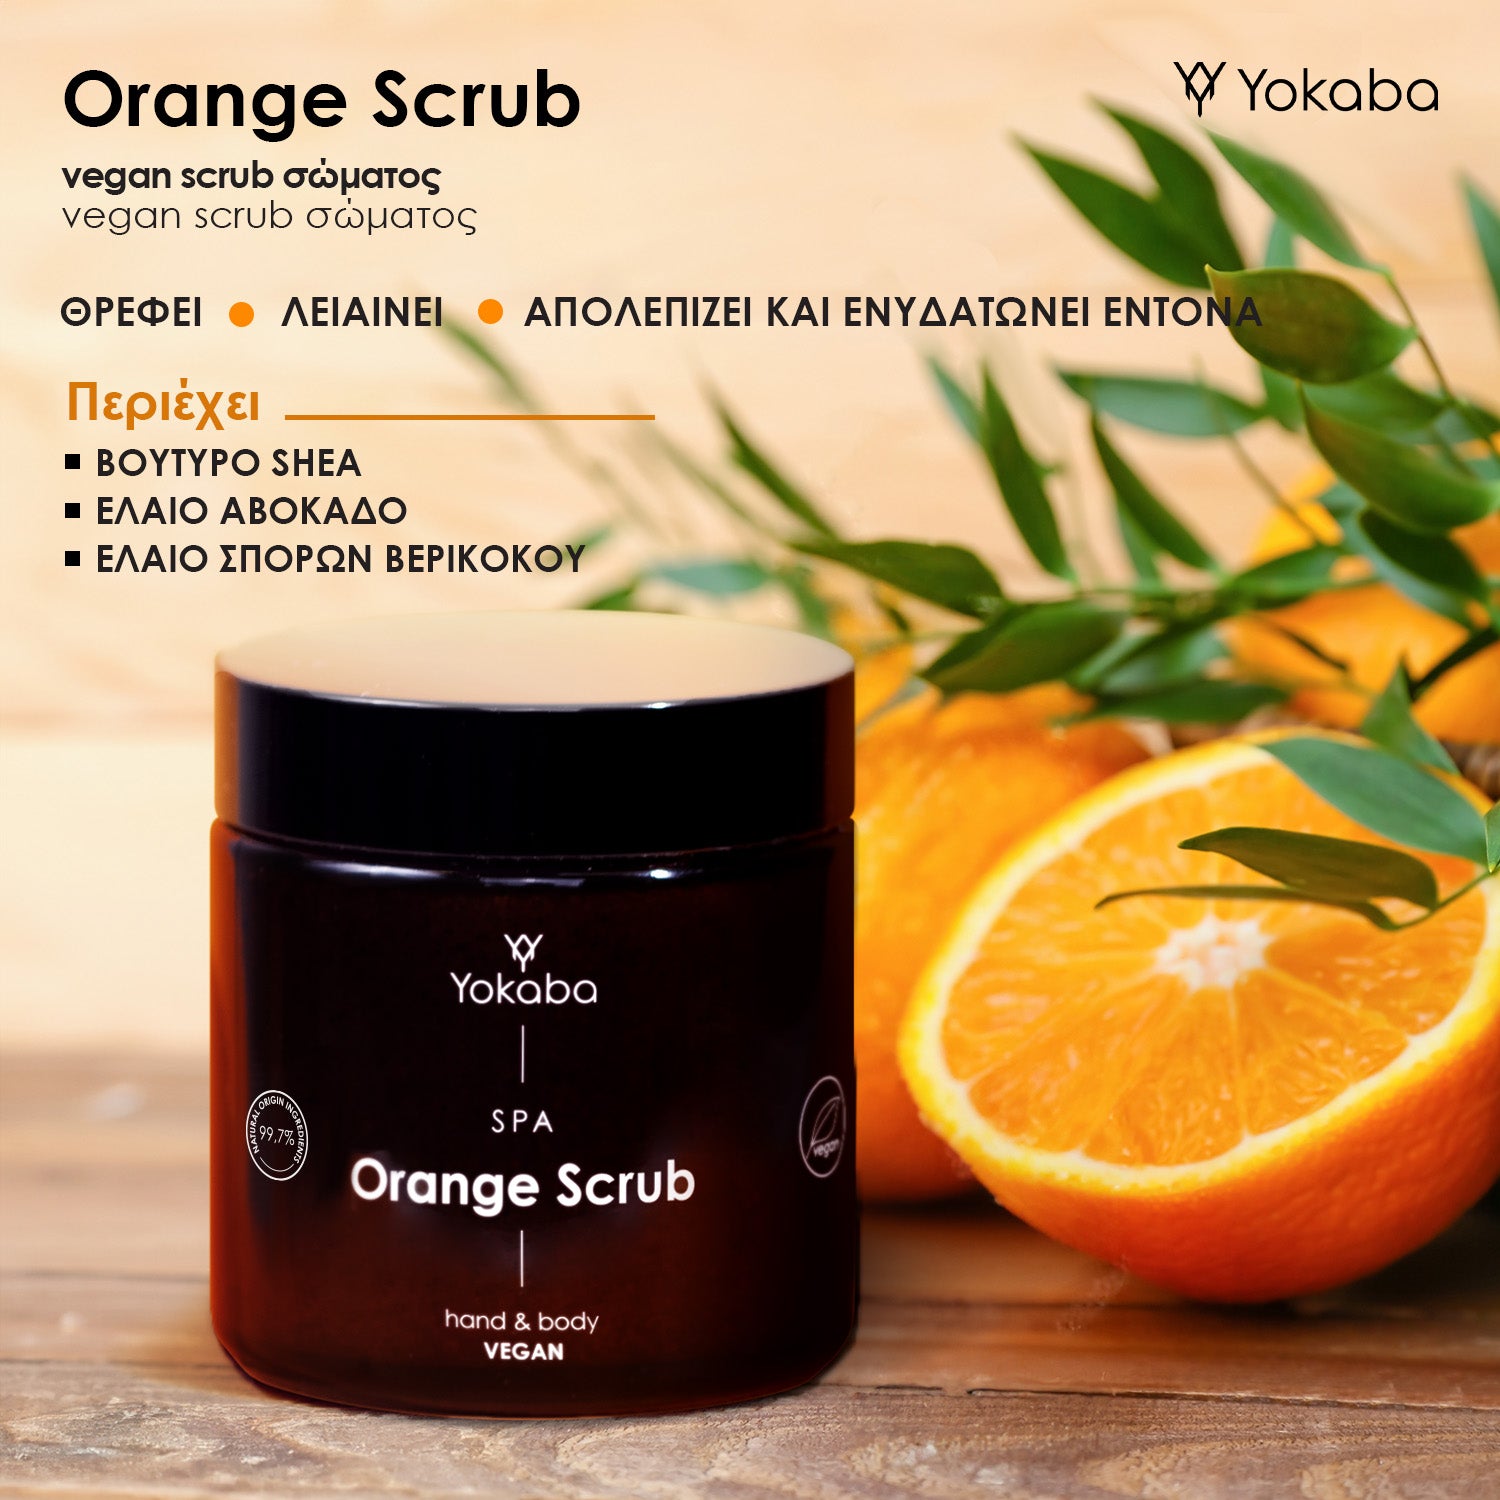 Vegan scrub σώματος - Orange Scrub 100ml - Φόρμουλα βασισμένη σε 99,7% συστατικά φυσικής προέλευσης.